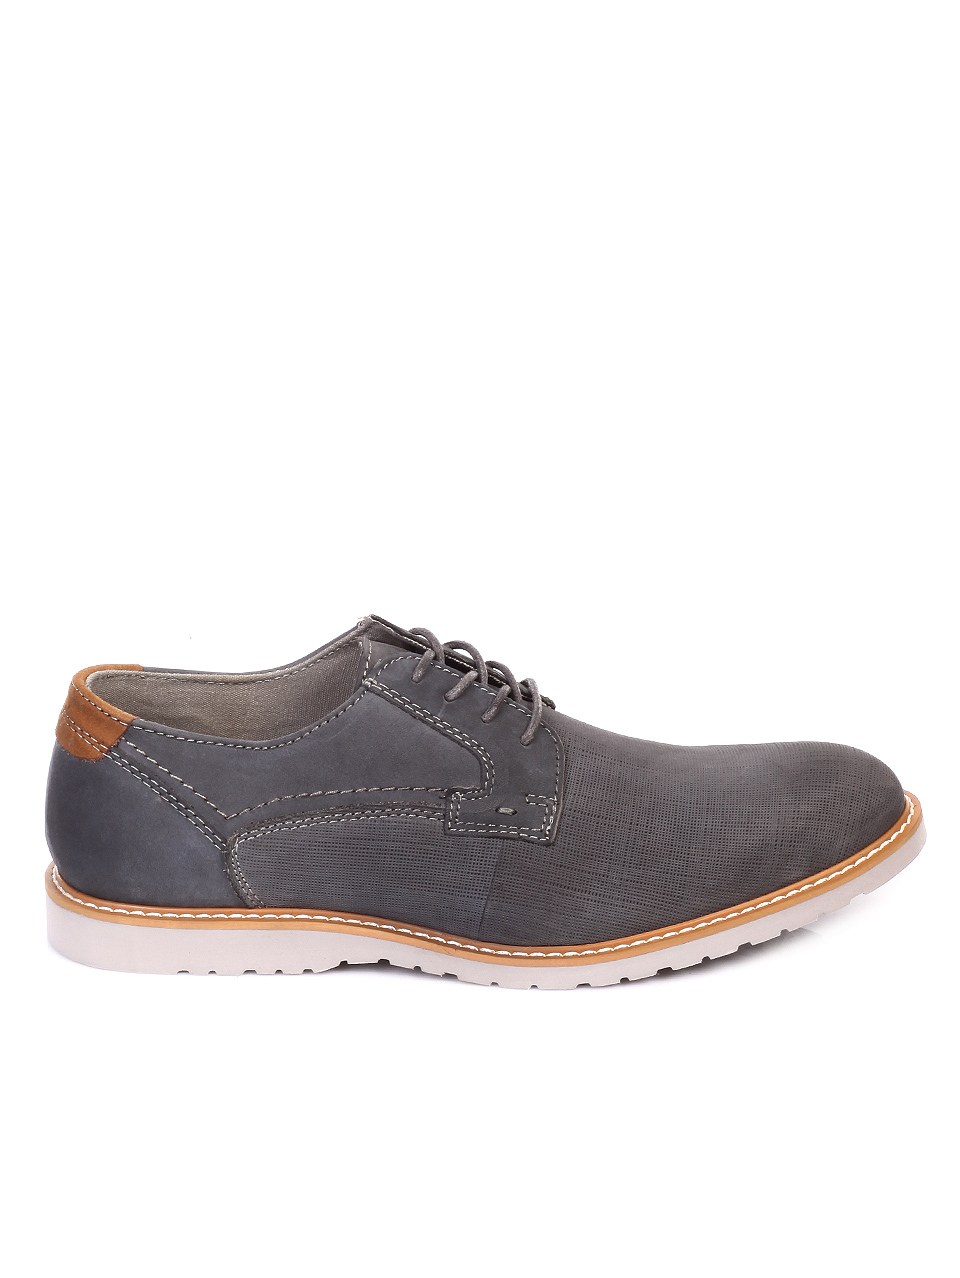 Ежедневни мъжки обувки от естествен набук 7N-19093 grey